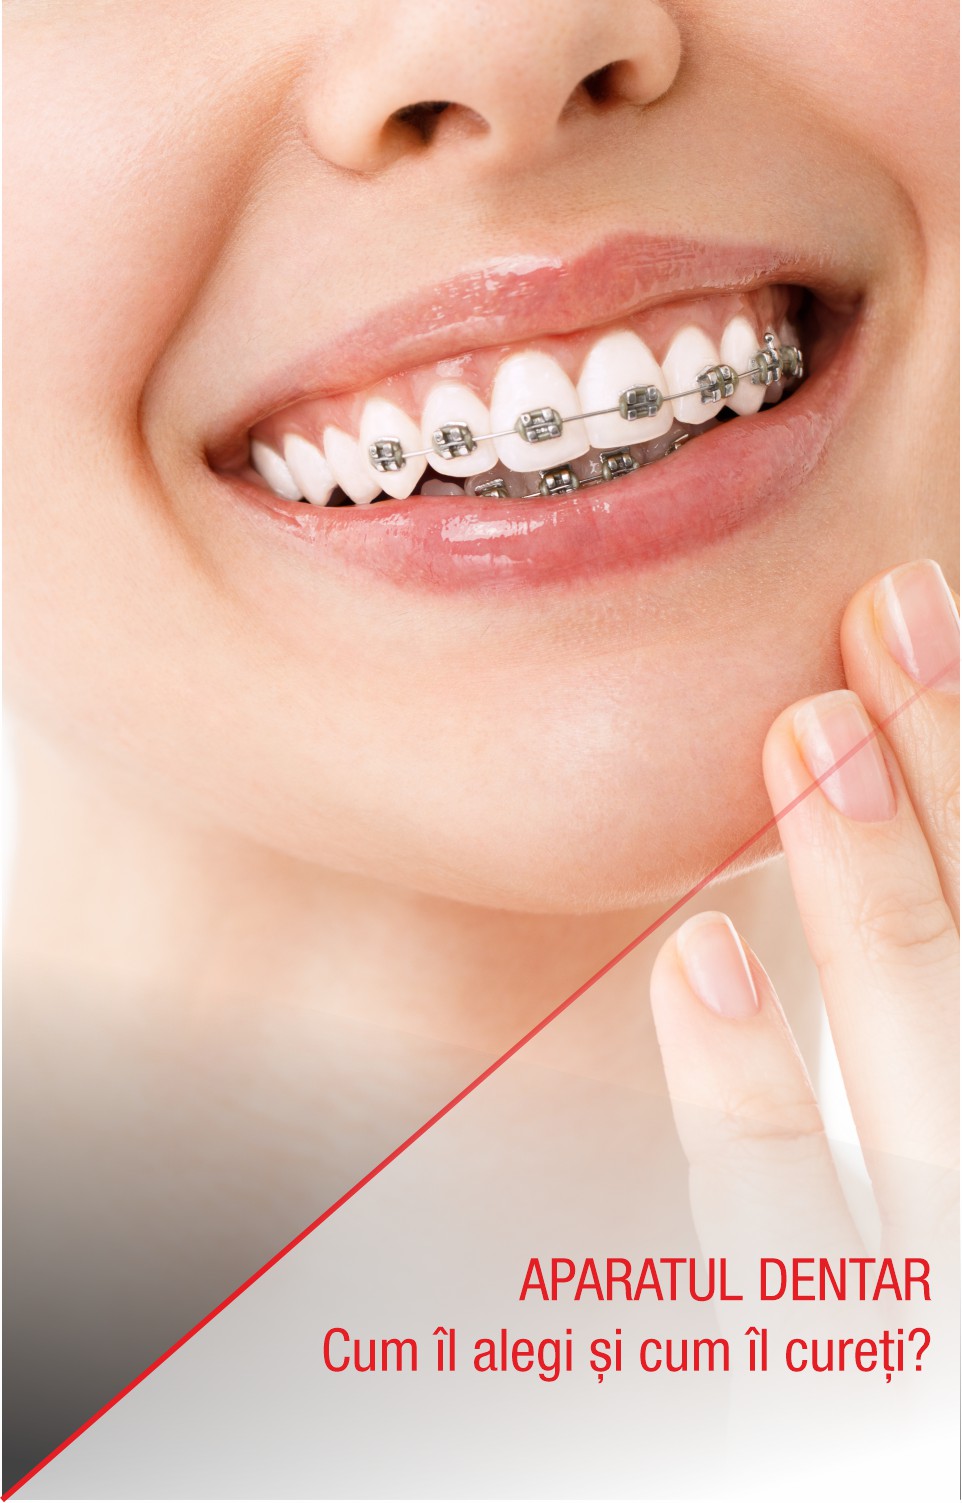 Aparatul dentar: cum îl alegi și cum îl cureți?